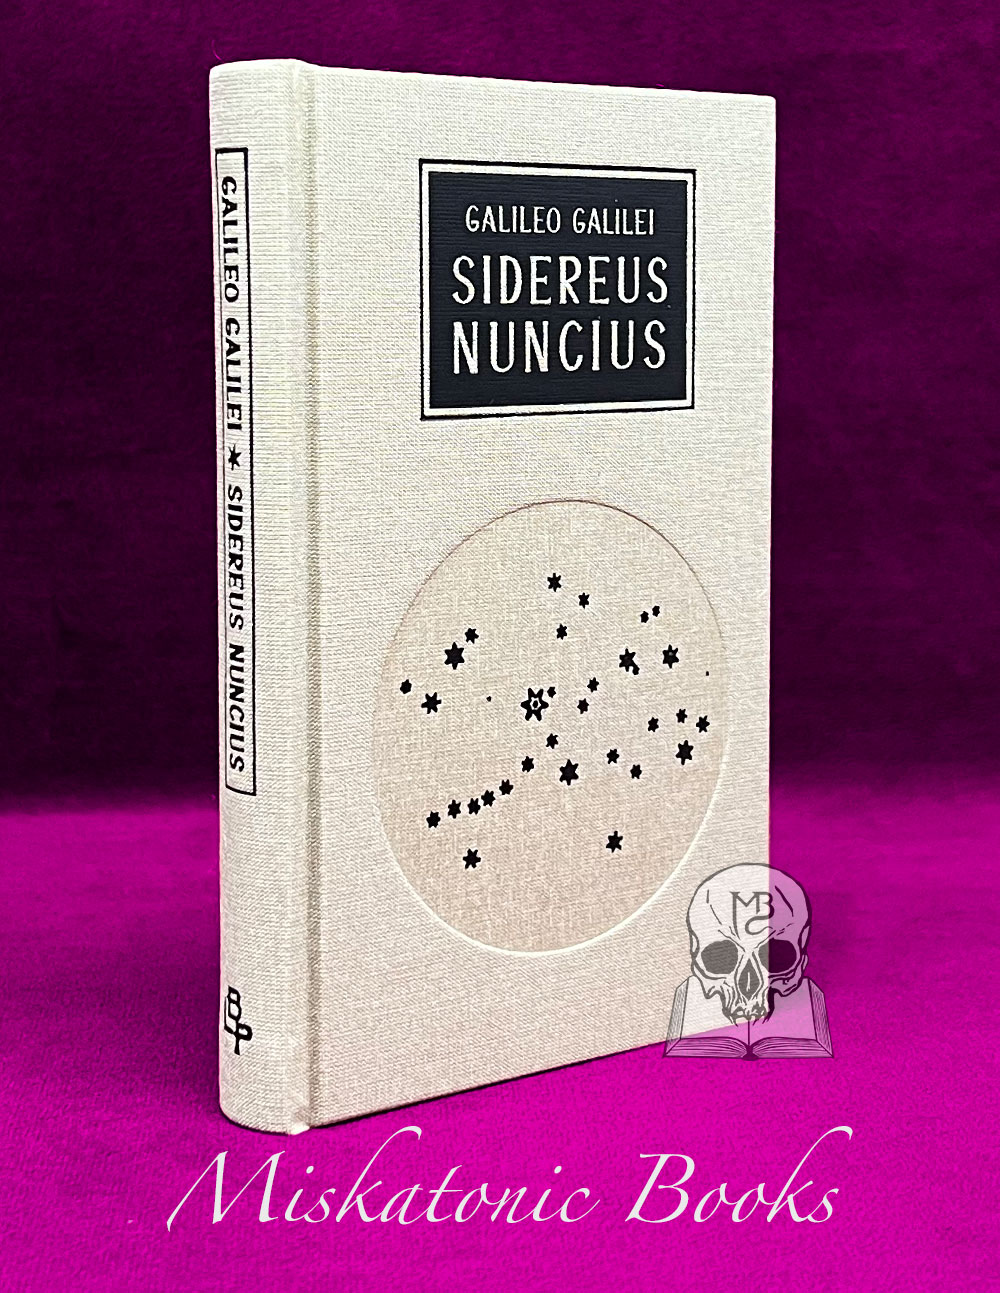 Galileo Galilei by Sidereus Nuncius (Hardcover Edition)